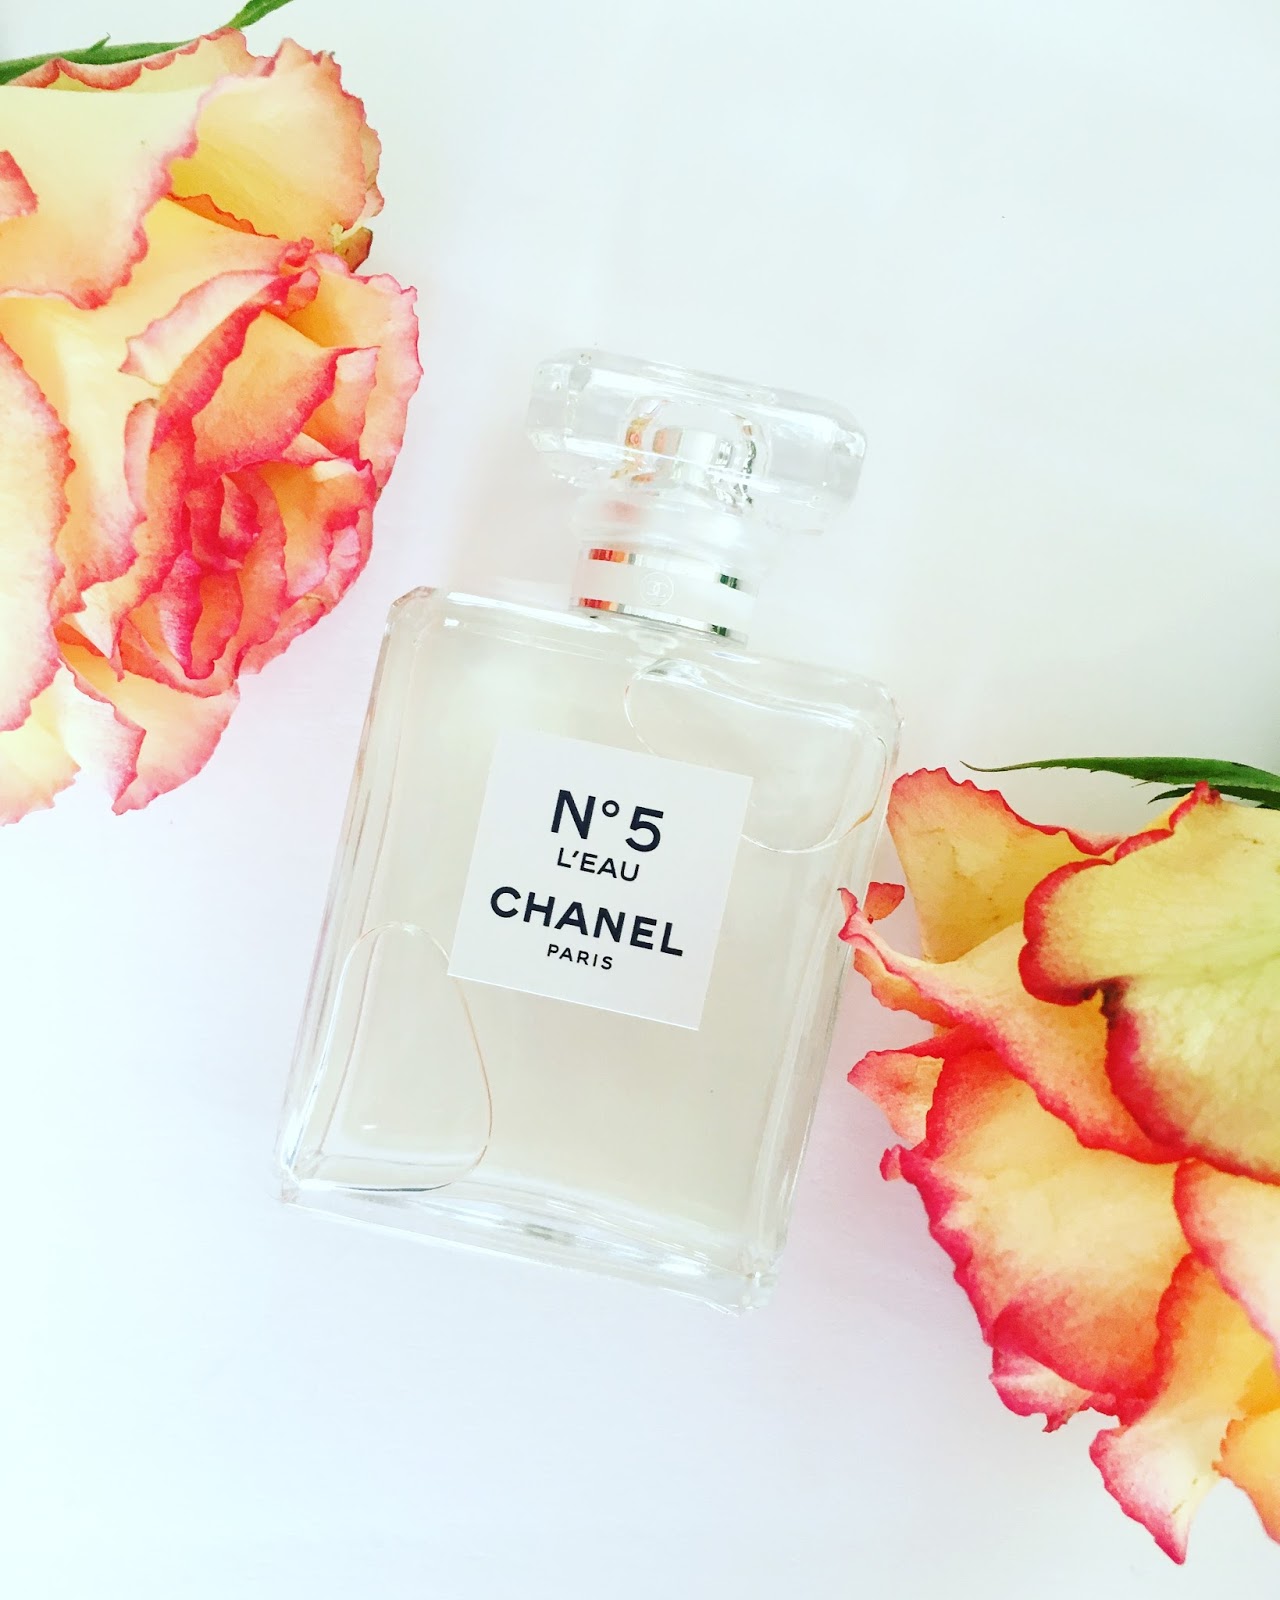 Chanel Paris No. 5 Perfume on Shop Display, Chanel No Editorial